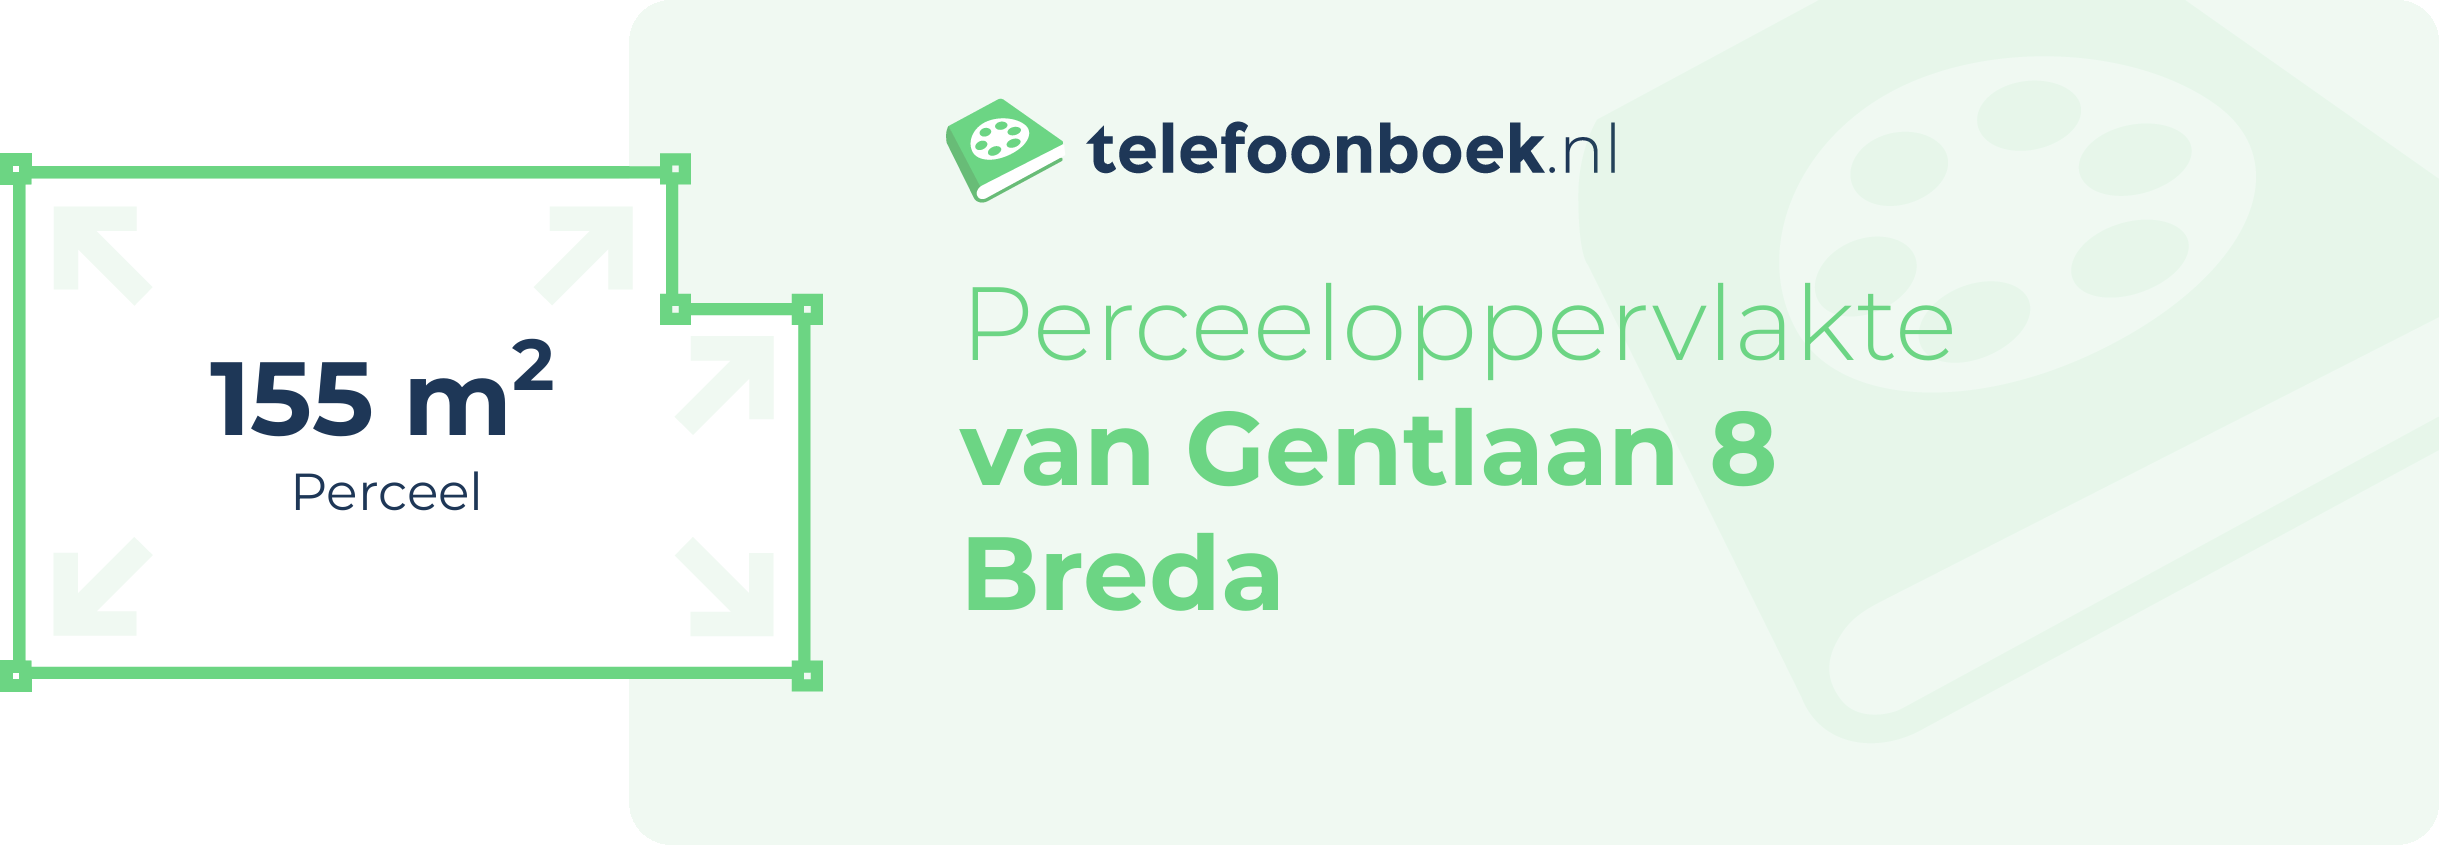 Perceeloppervlakte Van Gentlaan 8 Breda